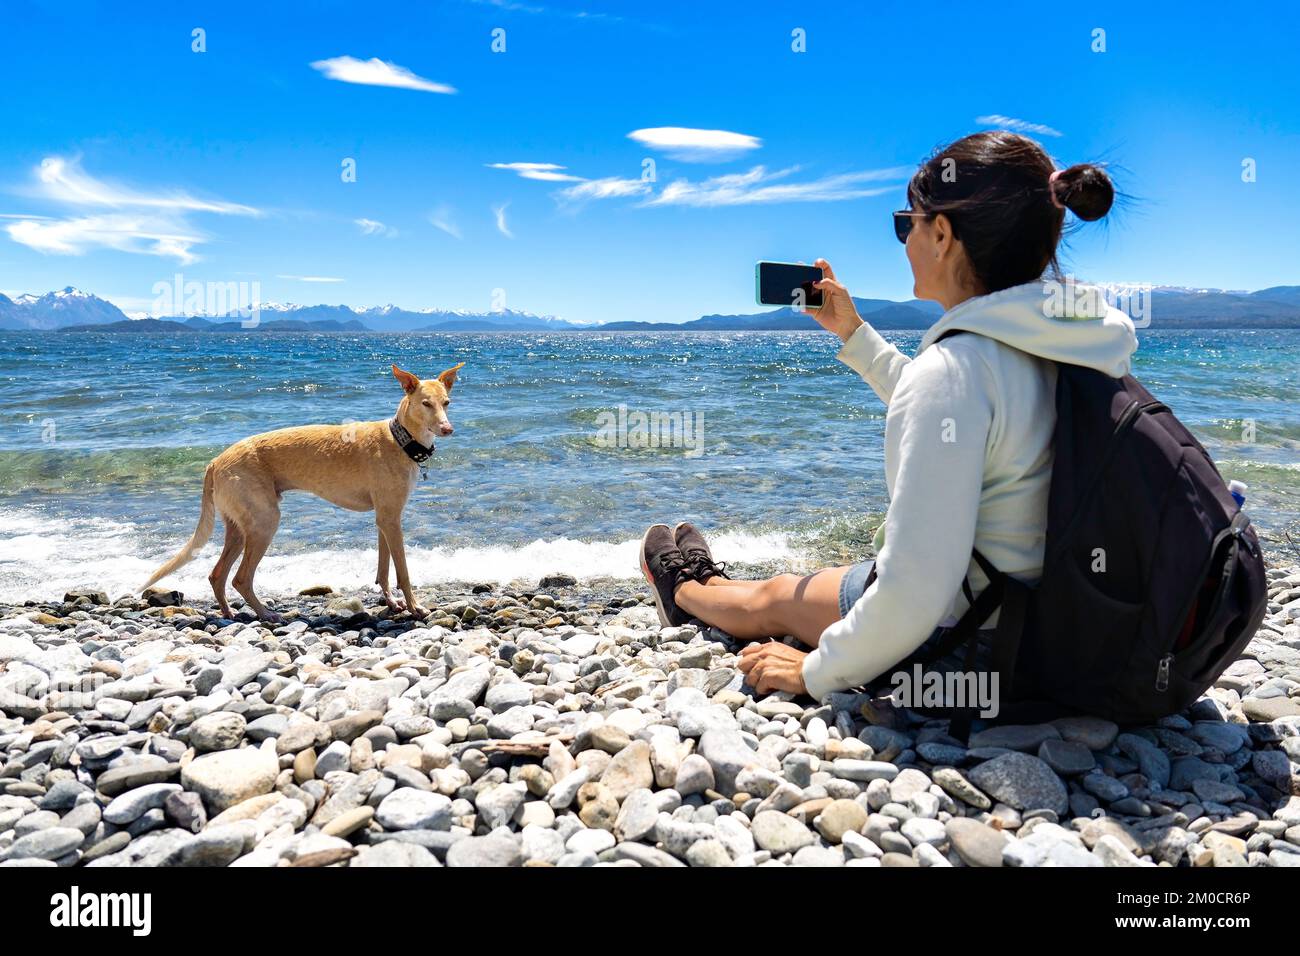 la donna scatta una foto del suo cane nel lago, dopo aver giocato in acqua. Foto Stock